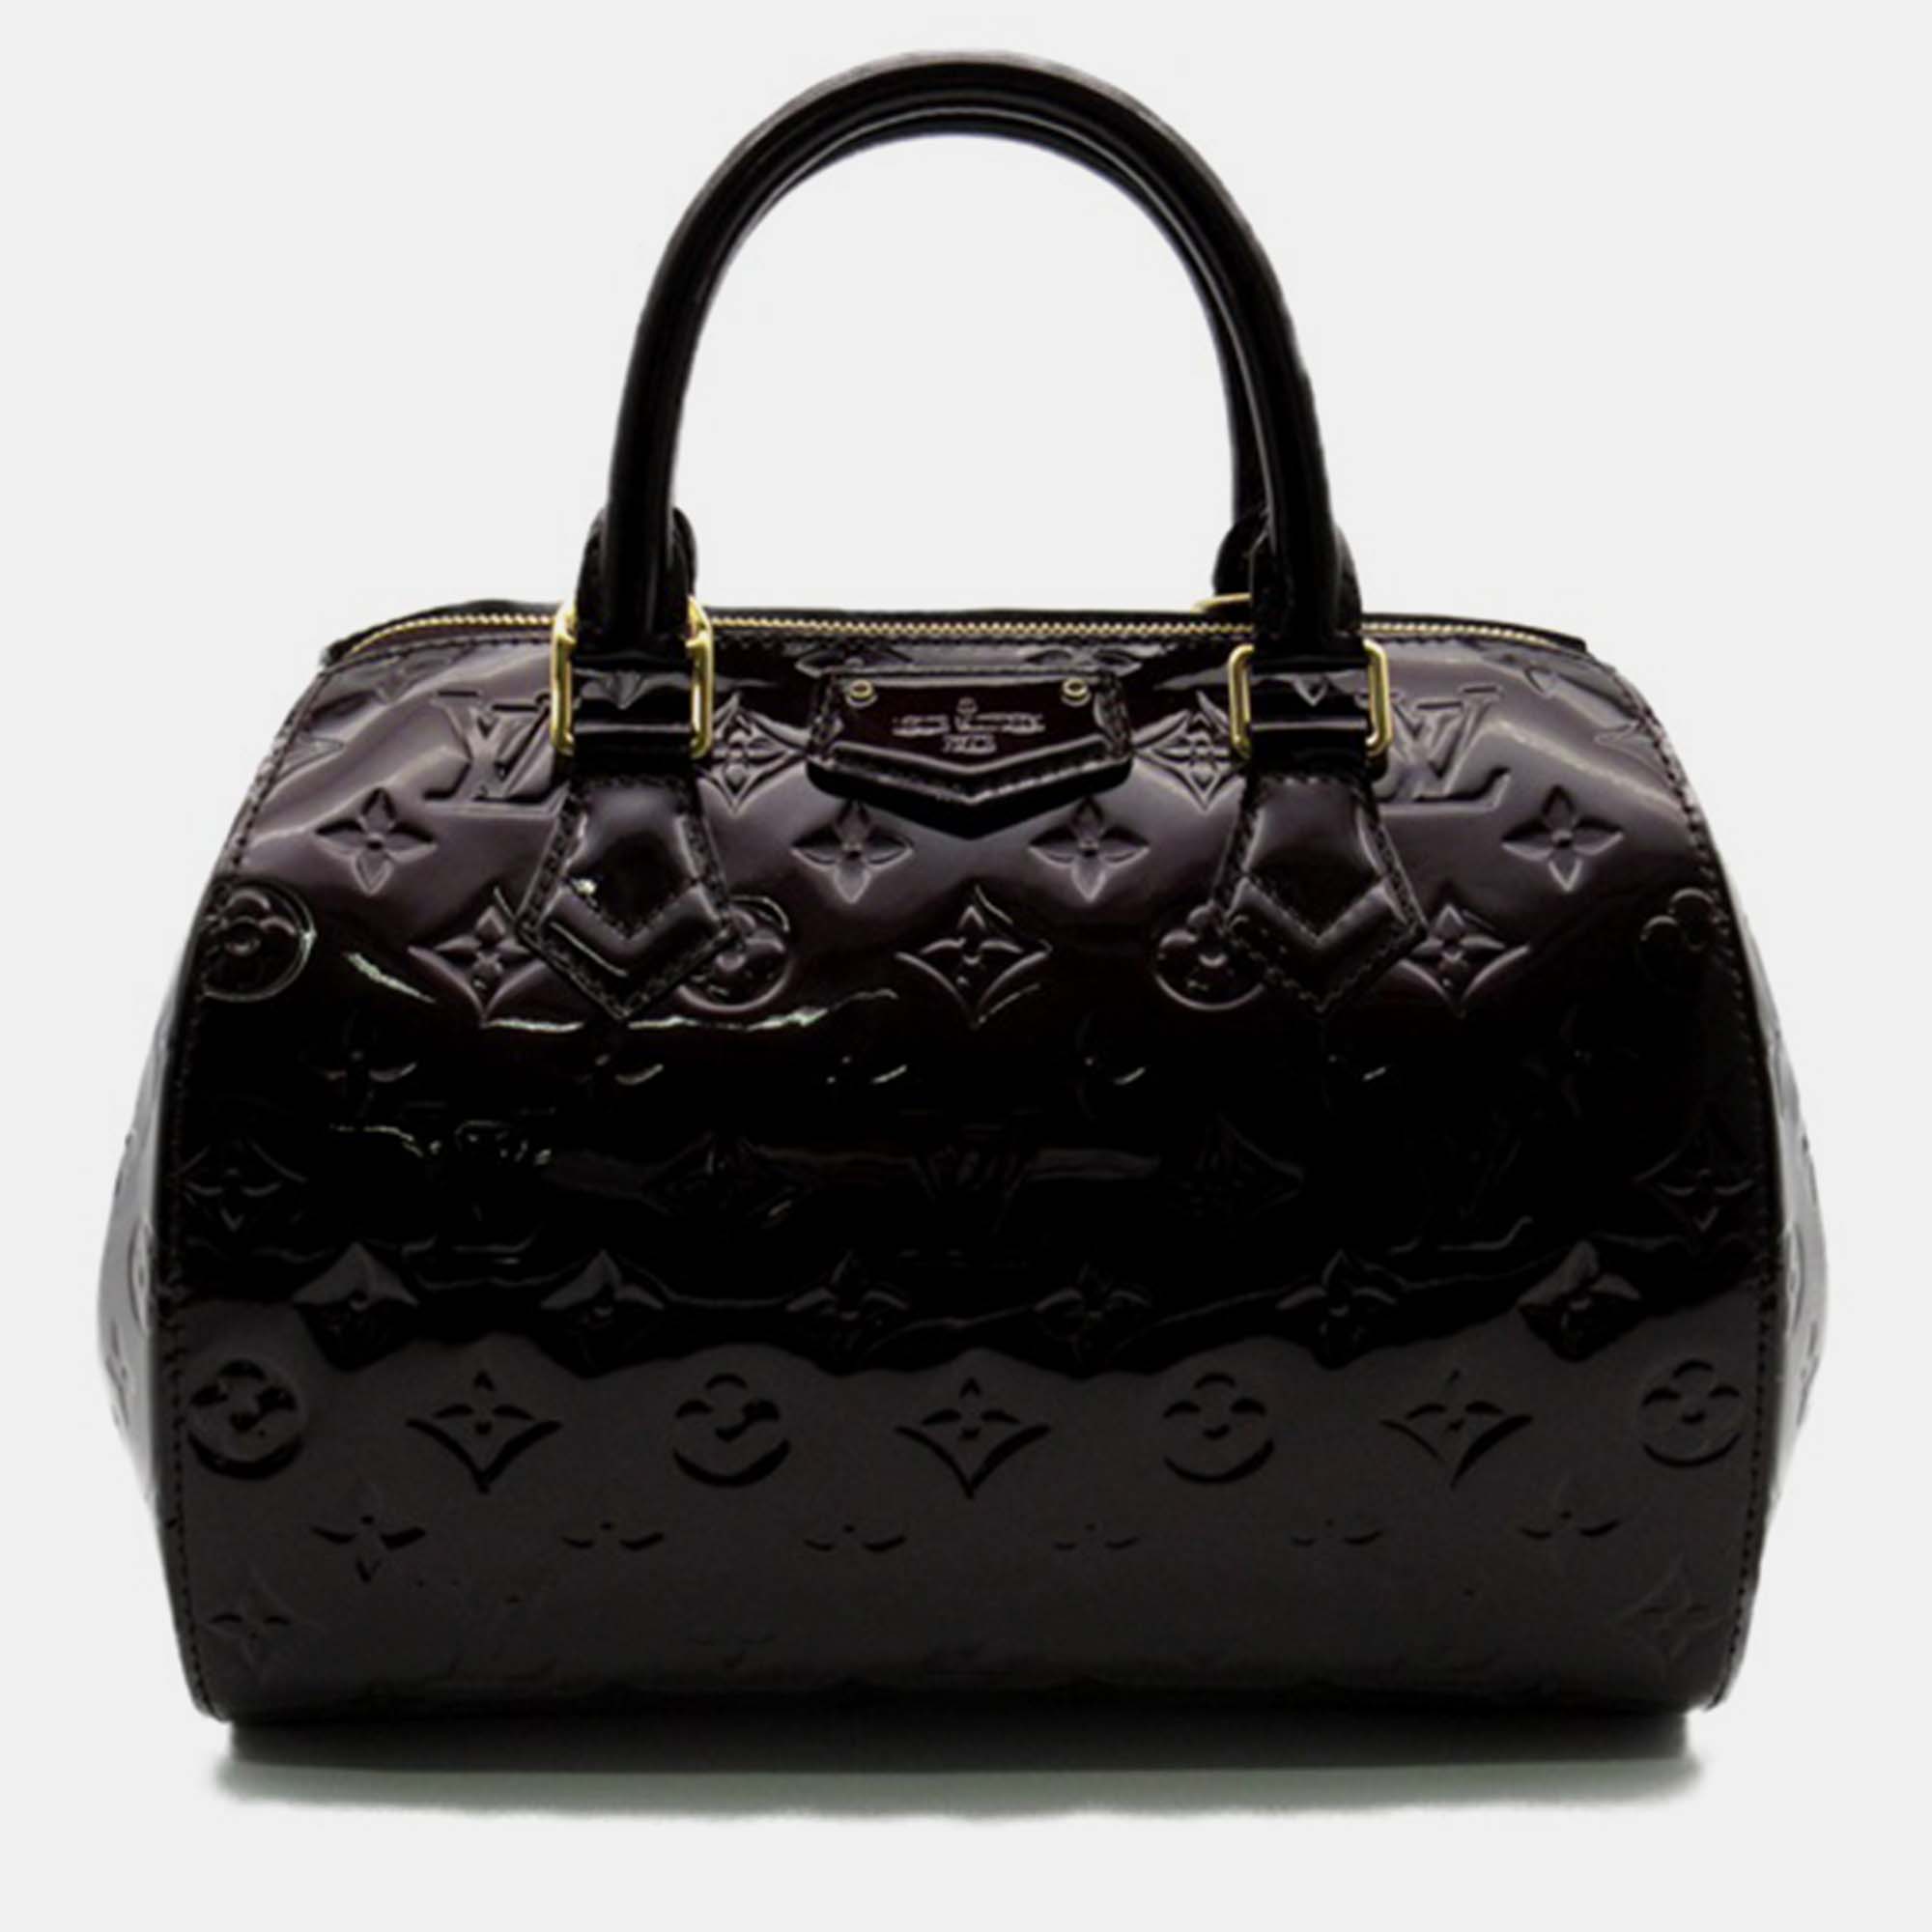 Louis vuitton purple leather montana satchel bag